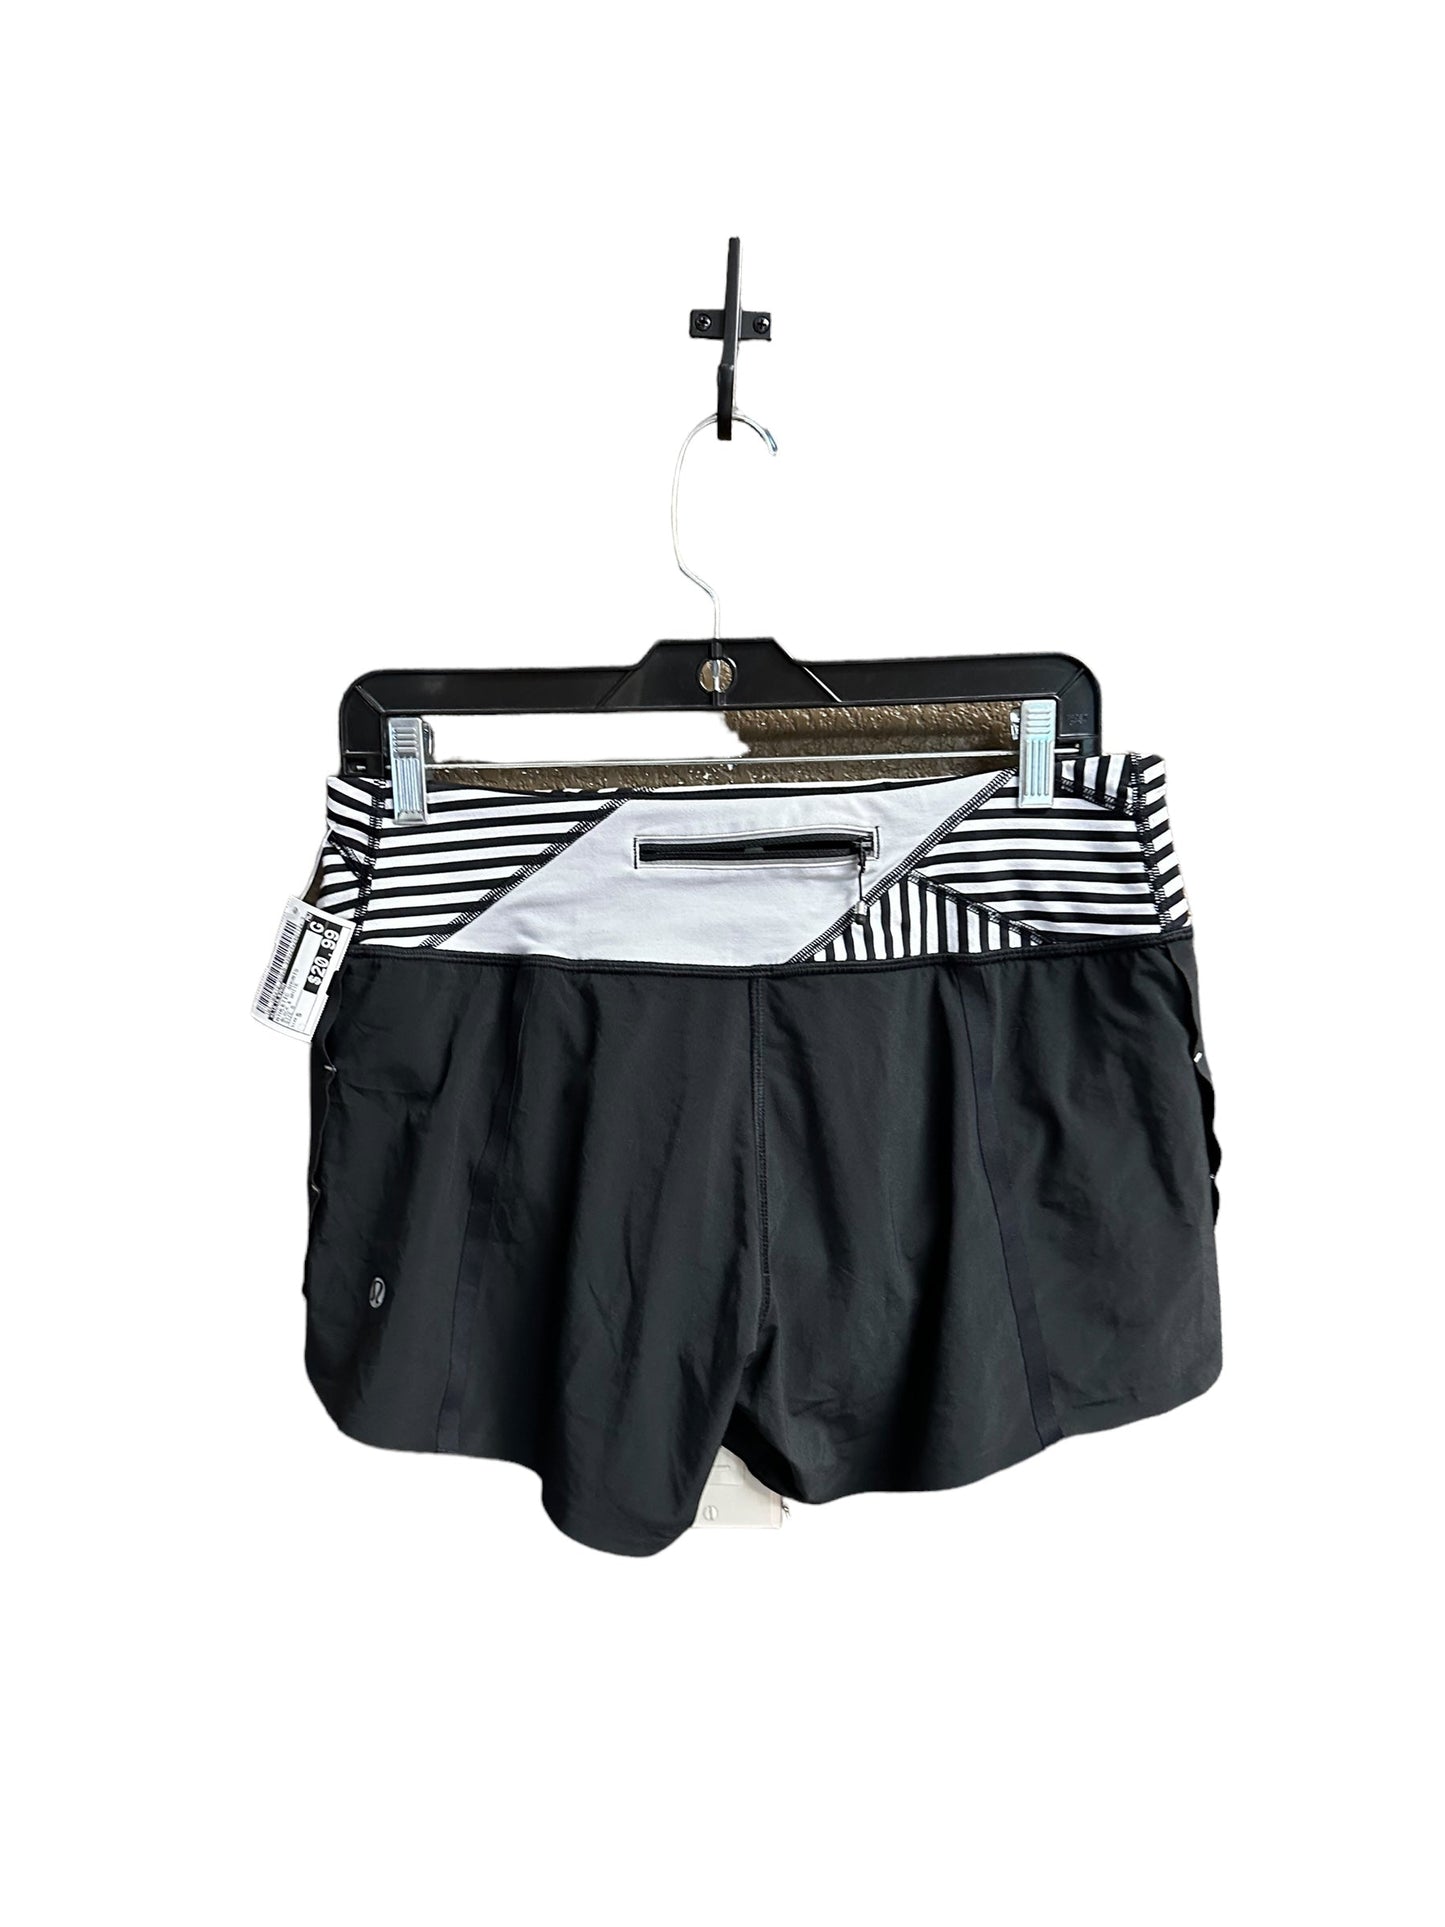 Black & White Athletic Shorts Lululemon, Size S